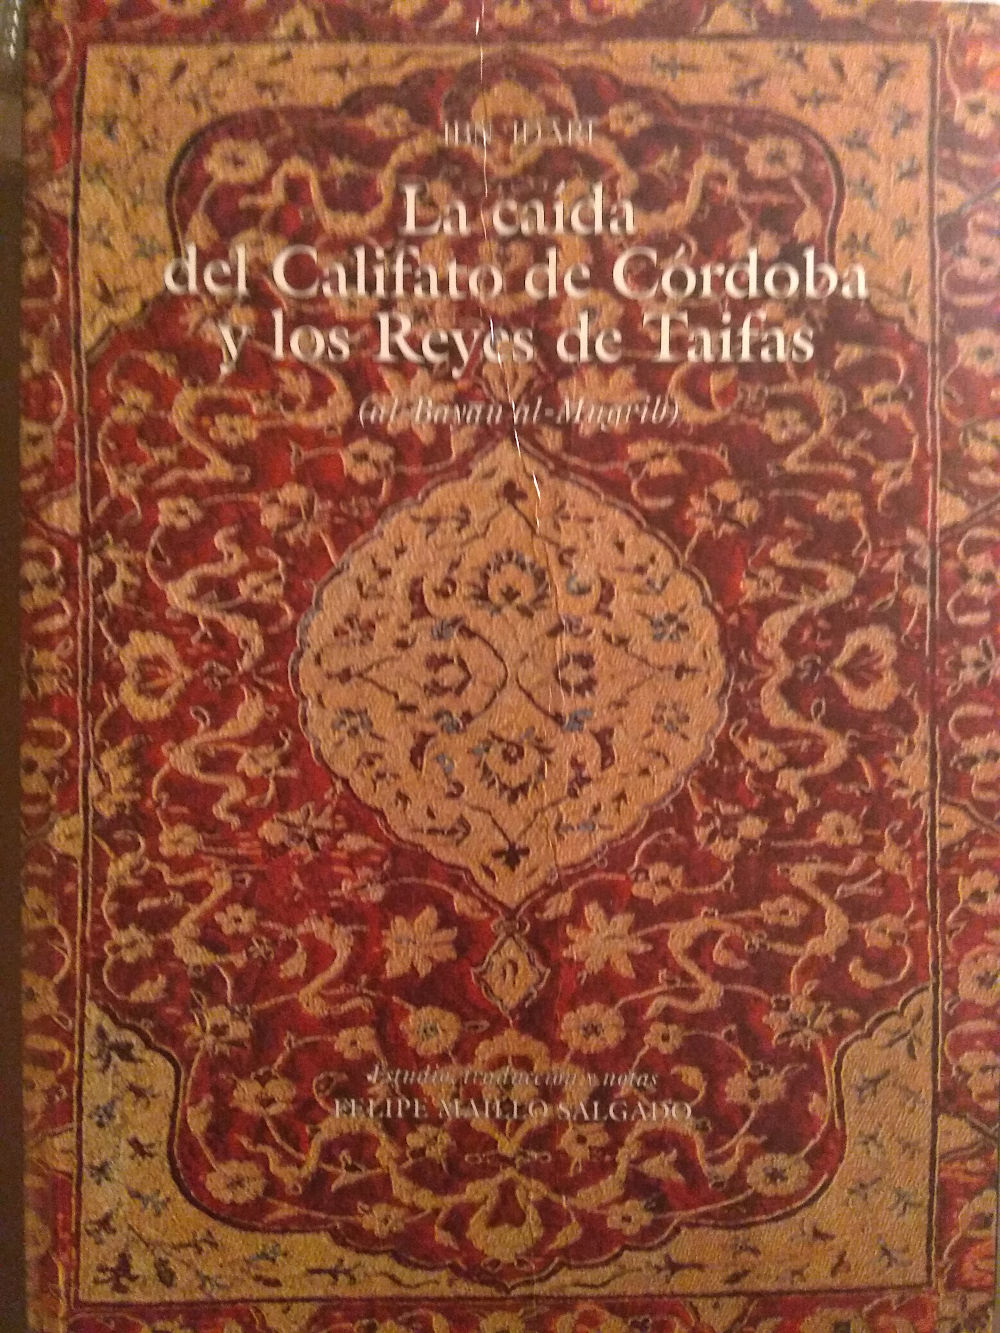 La caída del Califato de Córdoba y los Reyes de Taifas (al-Bayan al-Mugrib) Book Cover